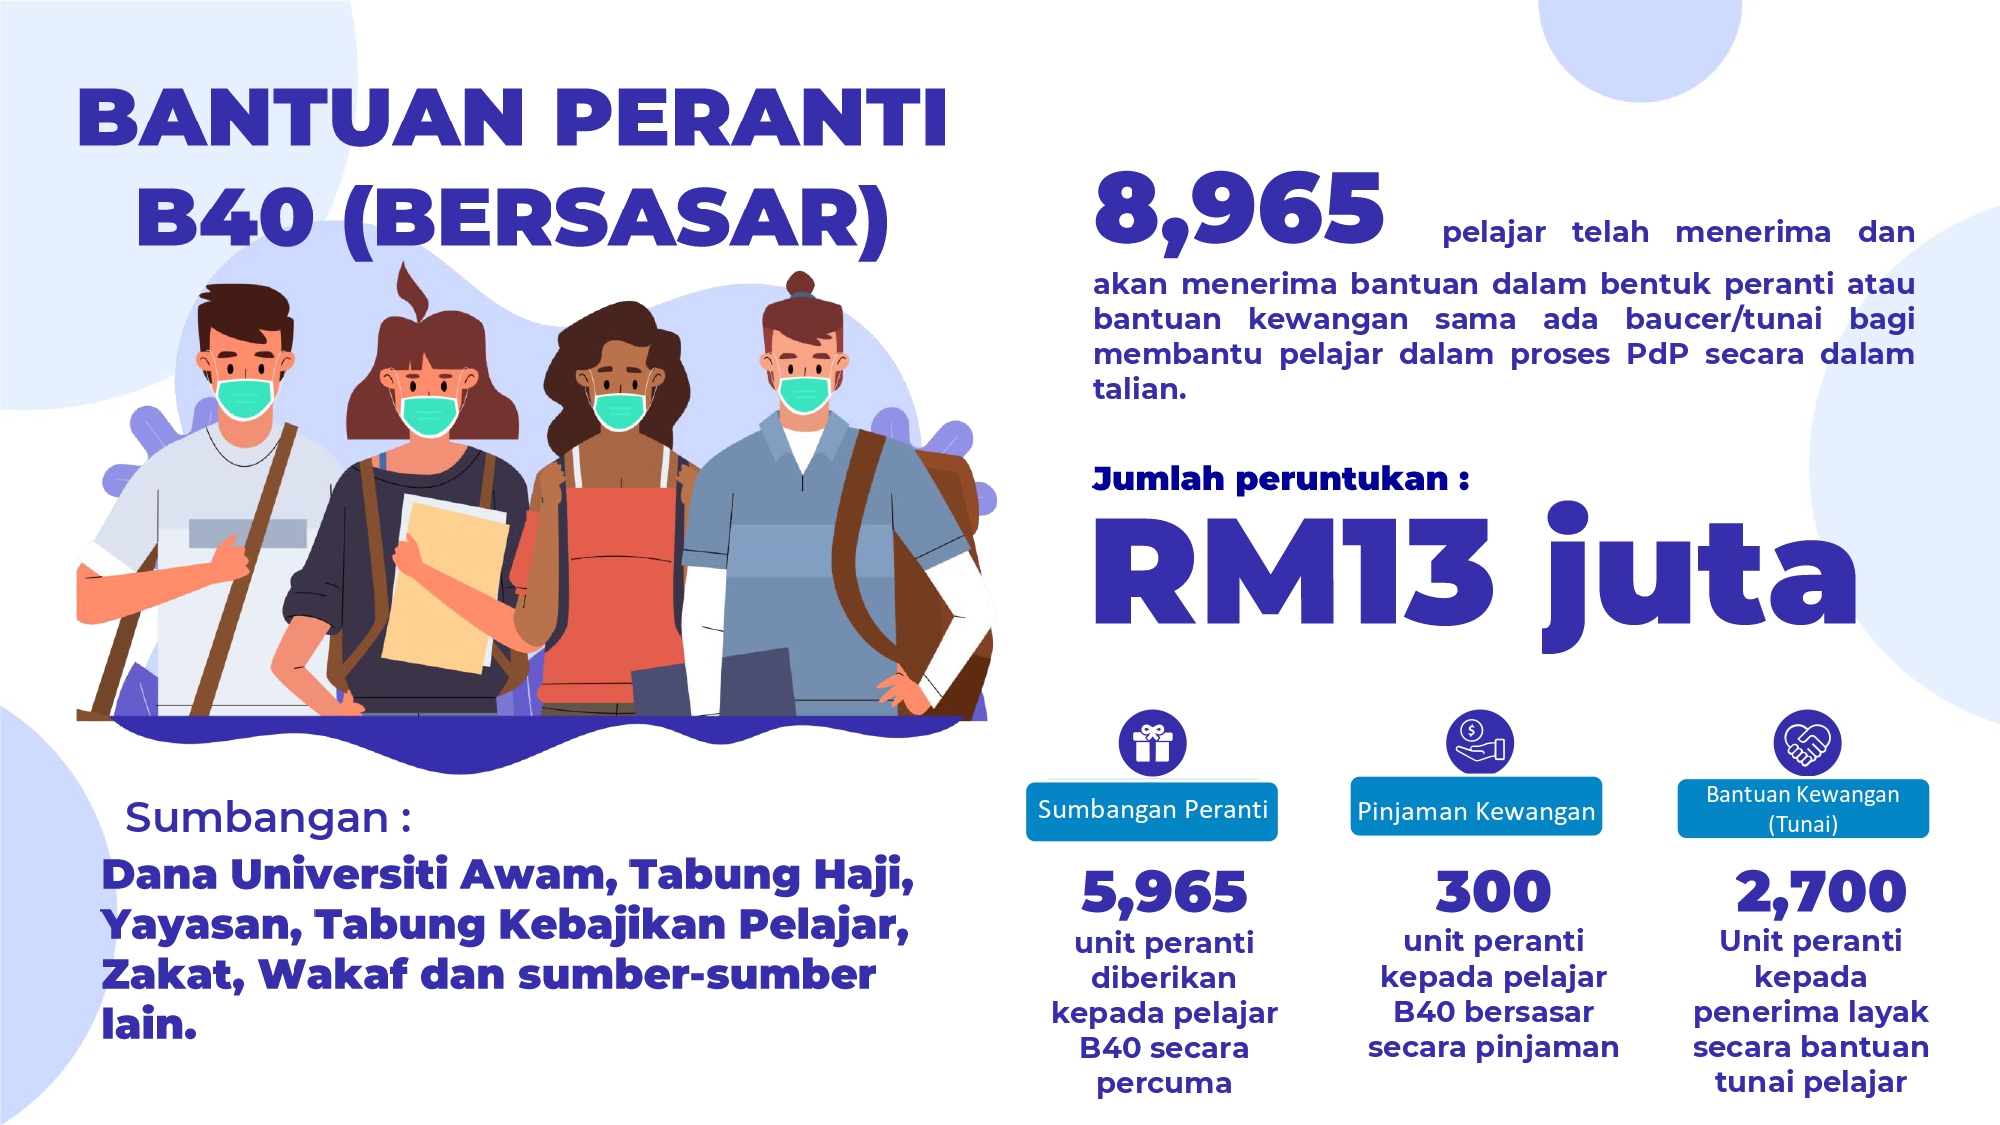 Pakej Pelan data, Peranti Dan Bantuan Tunai RM50 Kepada Pelajar IPT